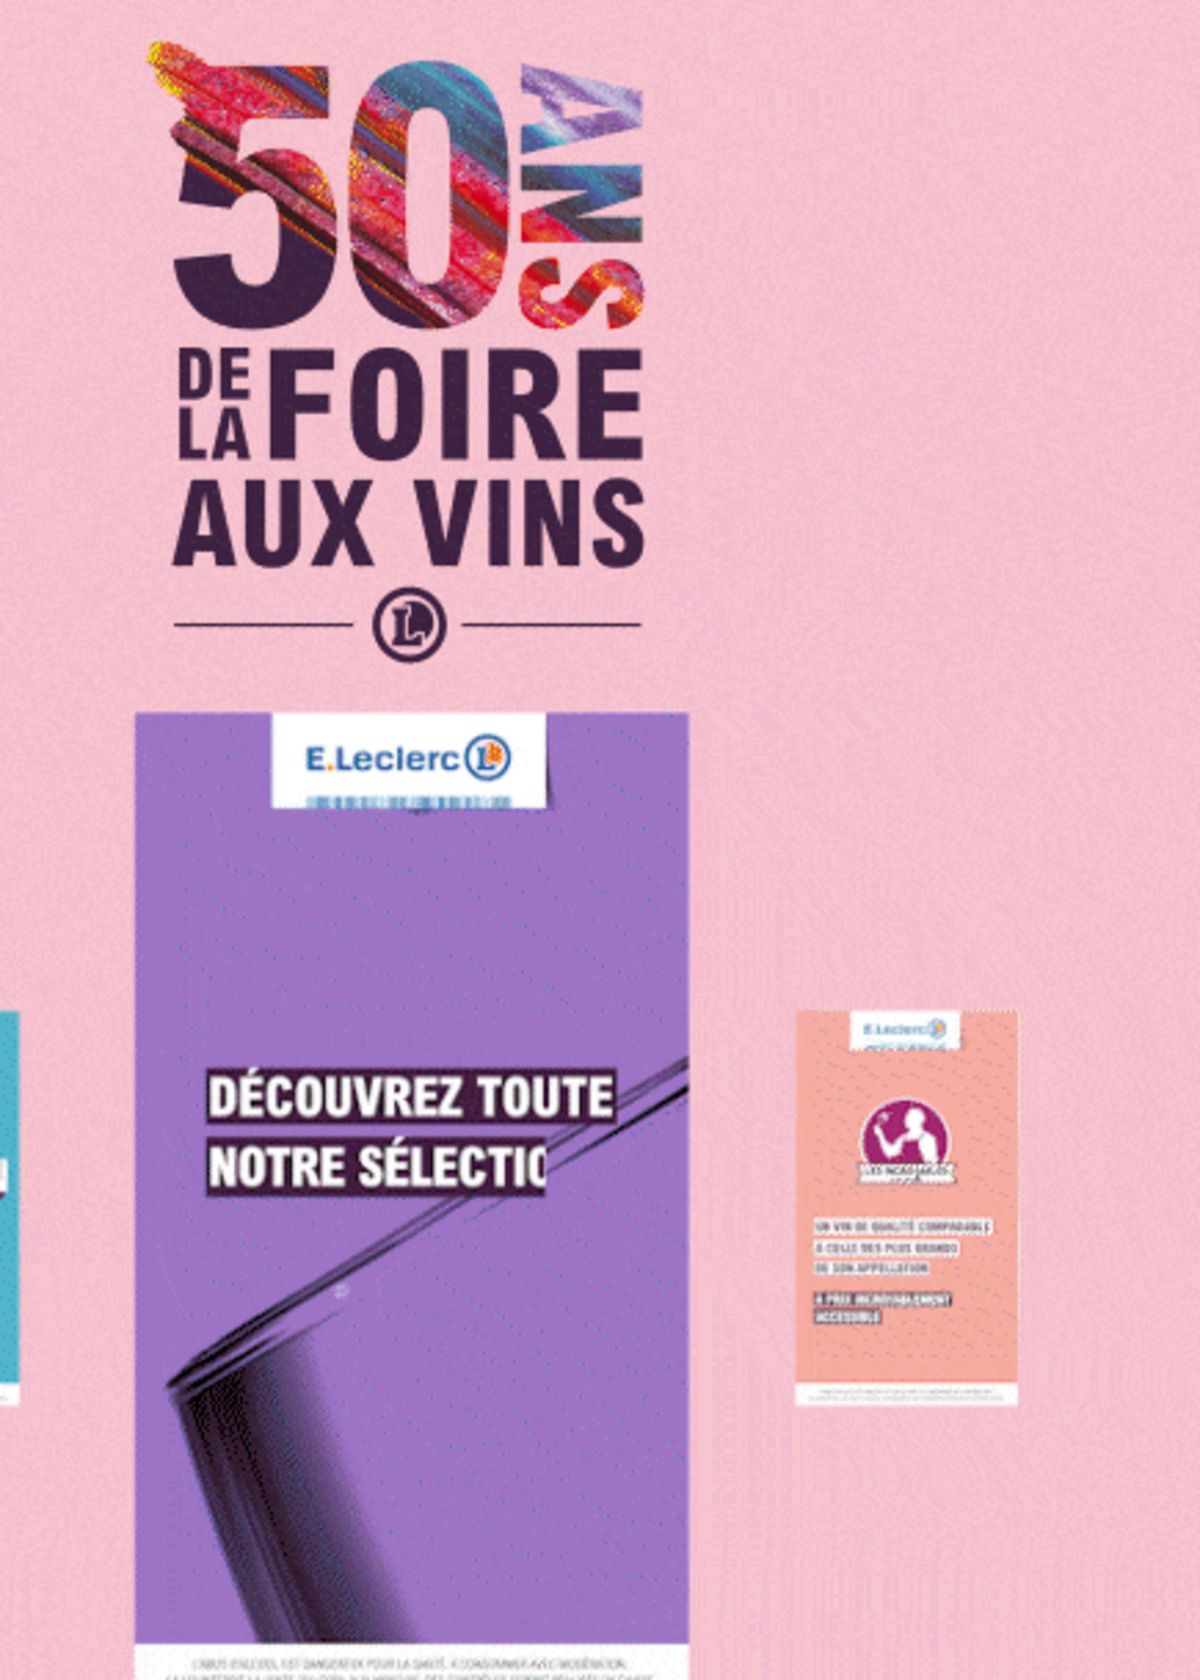 Catalogue Foire Aux Vins - Mixte, page 00383